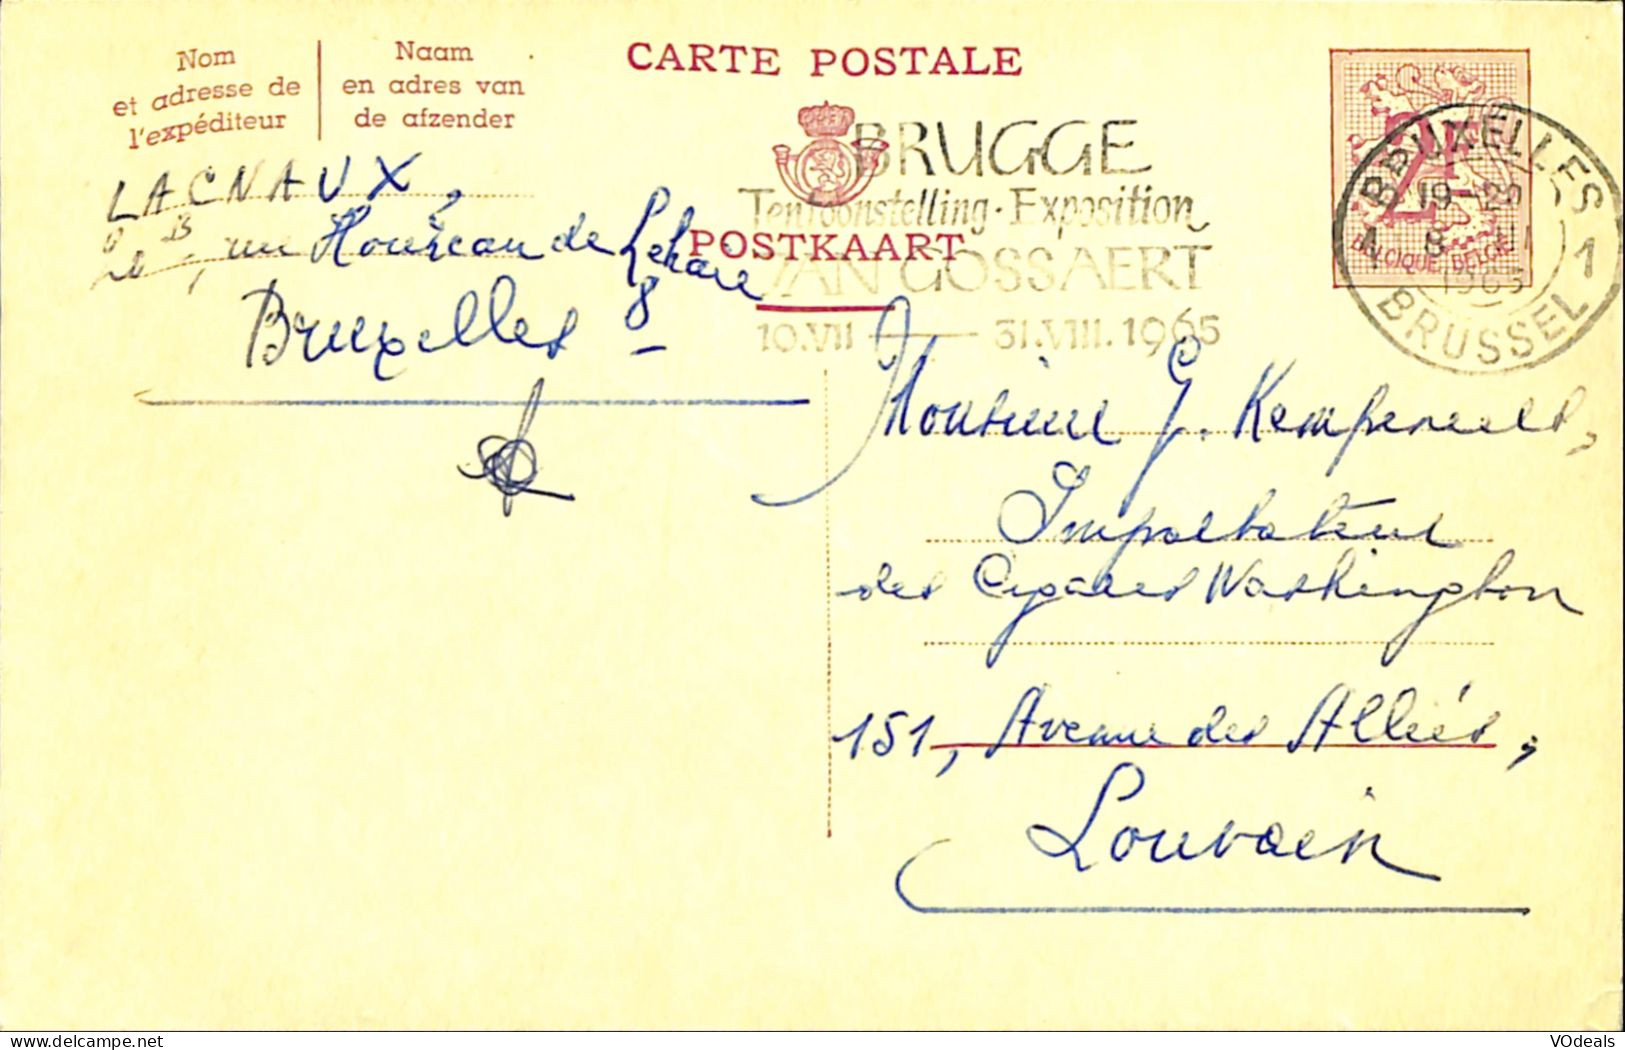 Belgique - Carte Postale - Entier Postal - 1965 - Bruxelles à Louvain - 2 Francs - Cartes Postales 1951-..